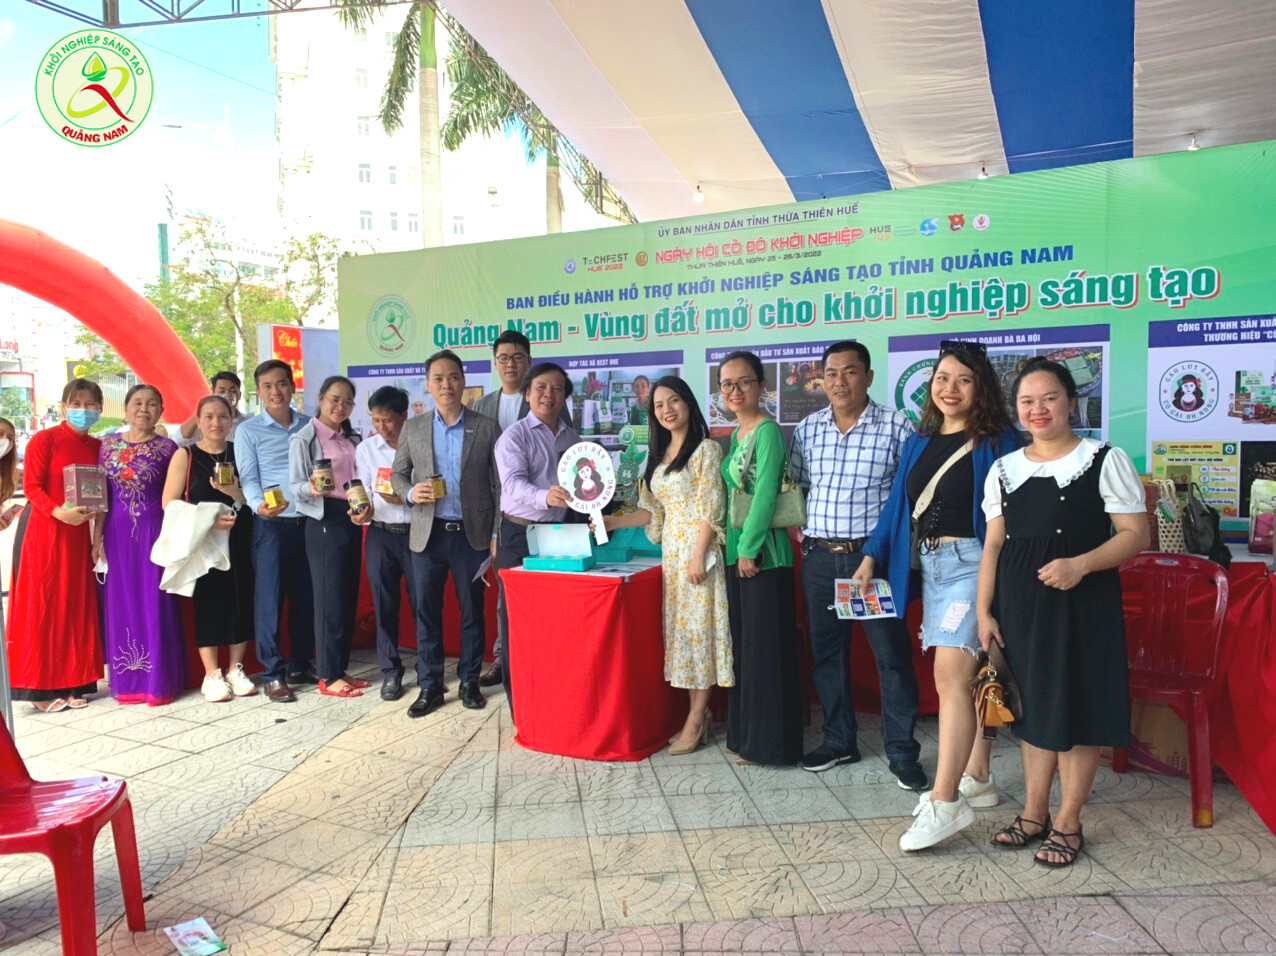 Ban điều hành khởi nghiệ sáng tạo tỉnh Quảng Nam tham gia với 6 dự án